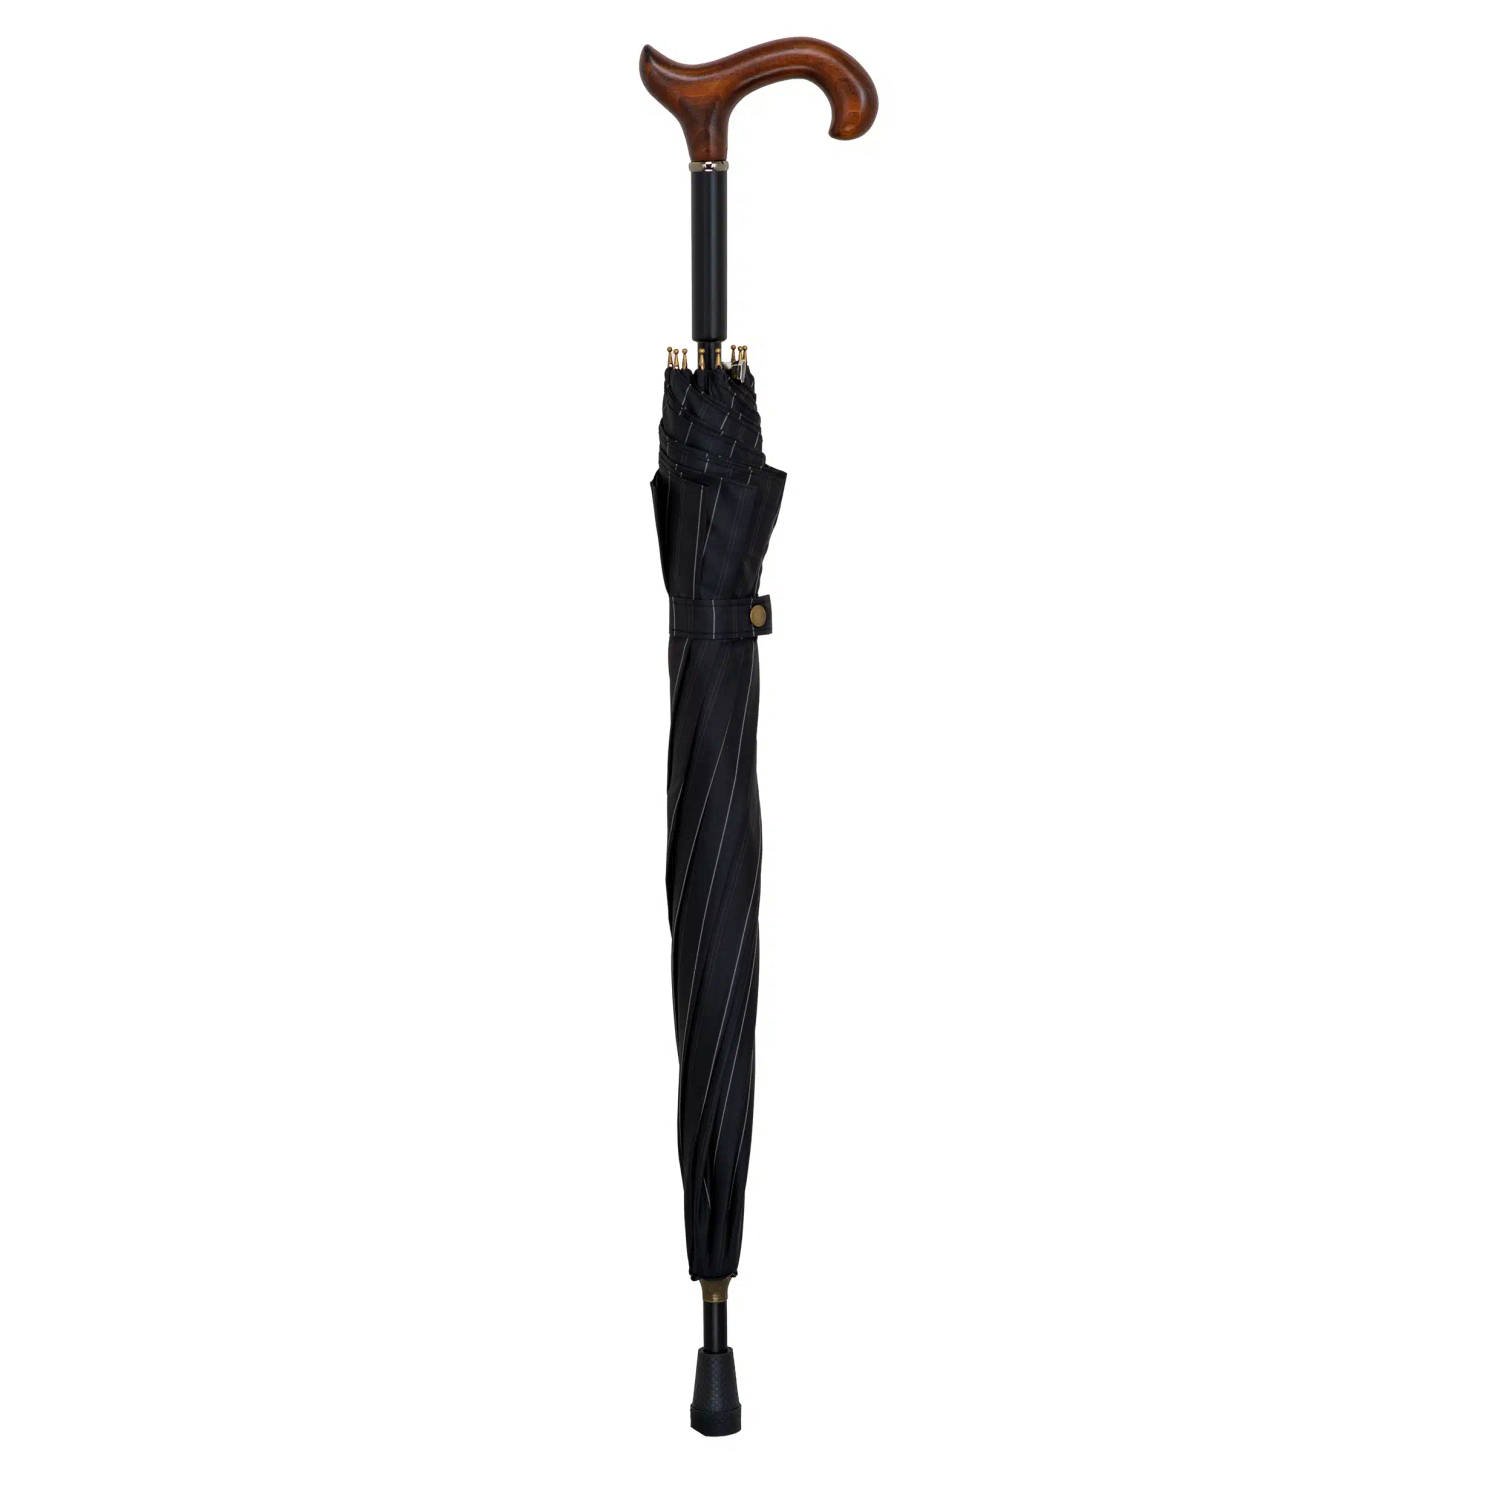 Gastrock Paraplu wandelstok - 78 cm lang - Derby handvat van beukenhout - Aluminium frame - Donkergrijs met lijnen polyester doek - Doorsnee doek 84 cm - Wandelstokken - Paraplu wa